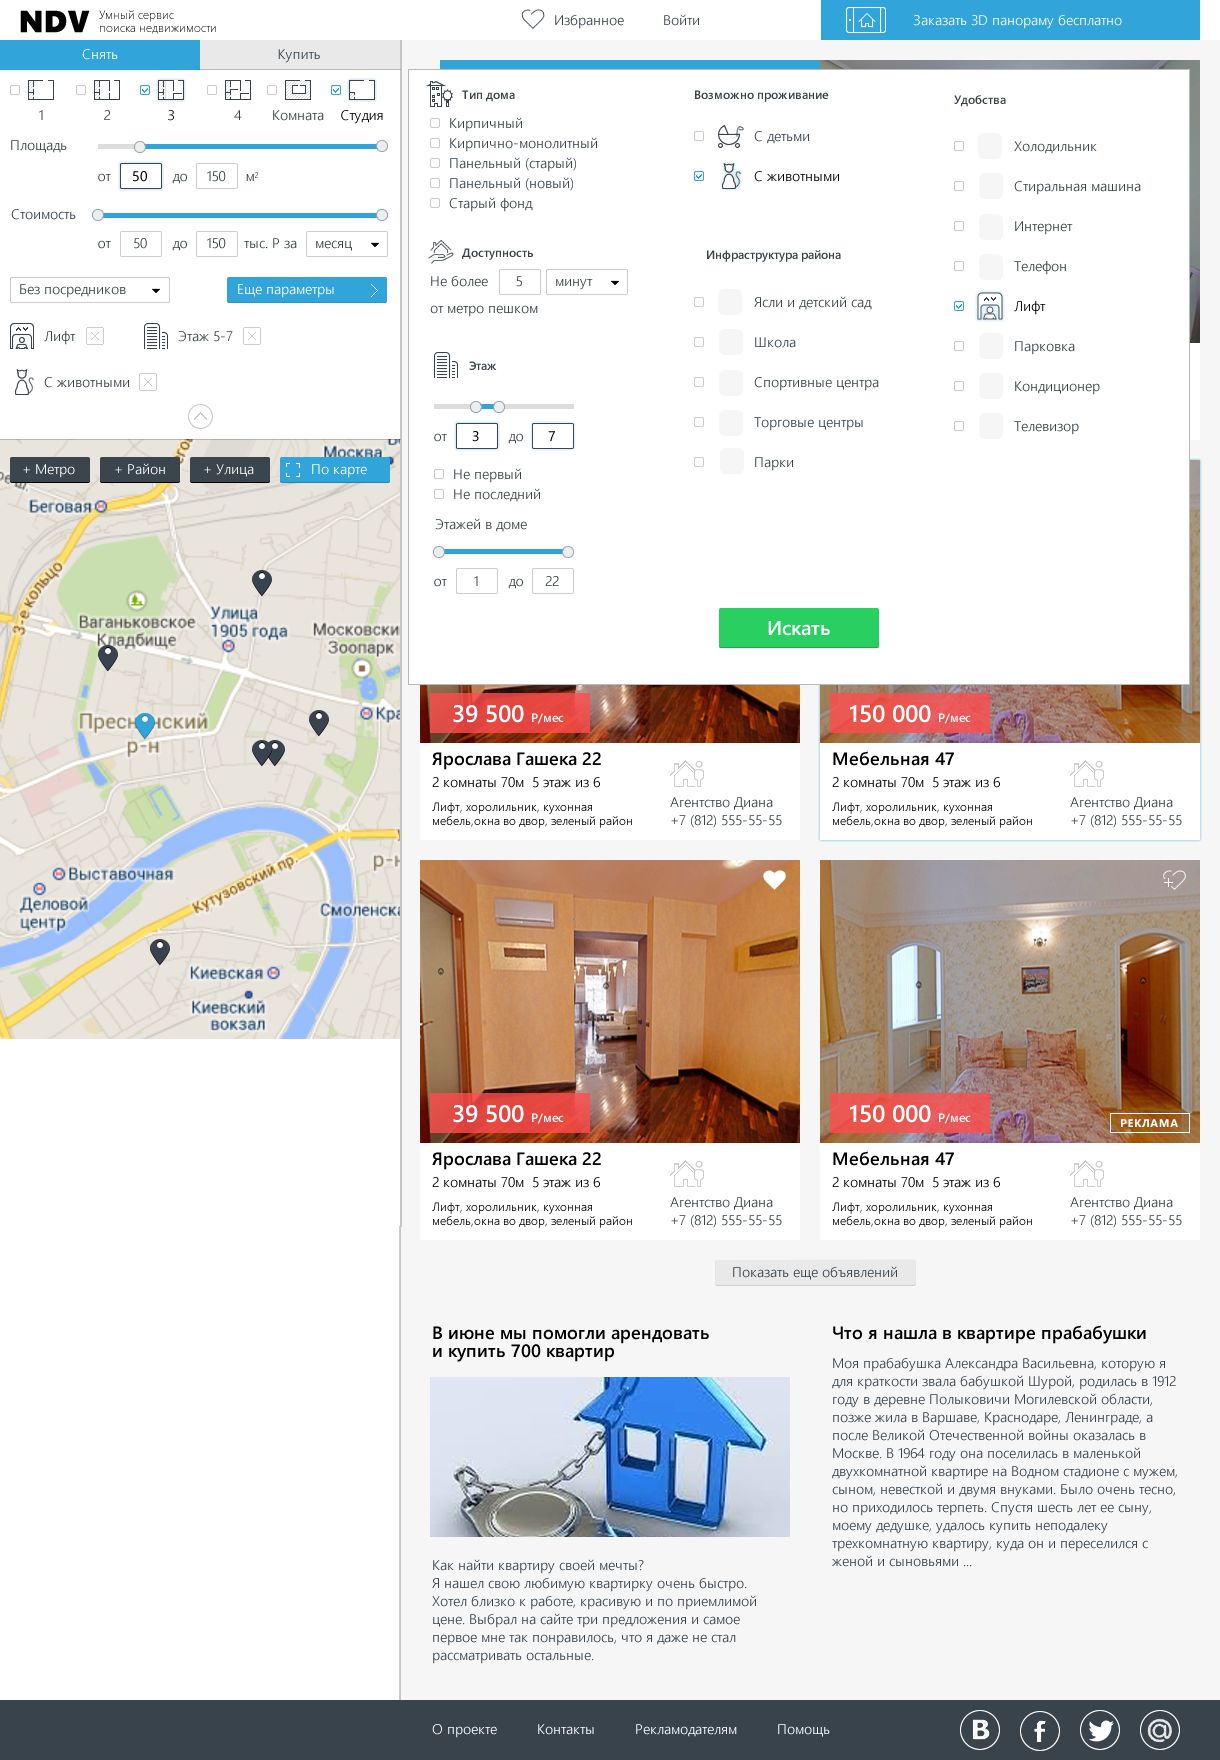 Дизайн главной - поиск недвижимости - дизайнер maxa_v